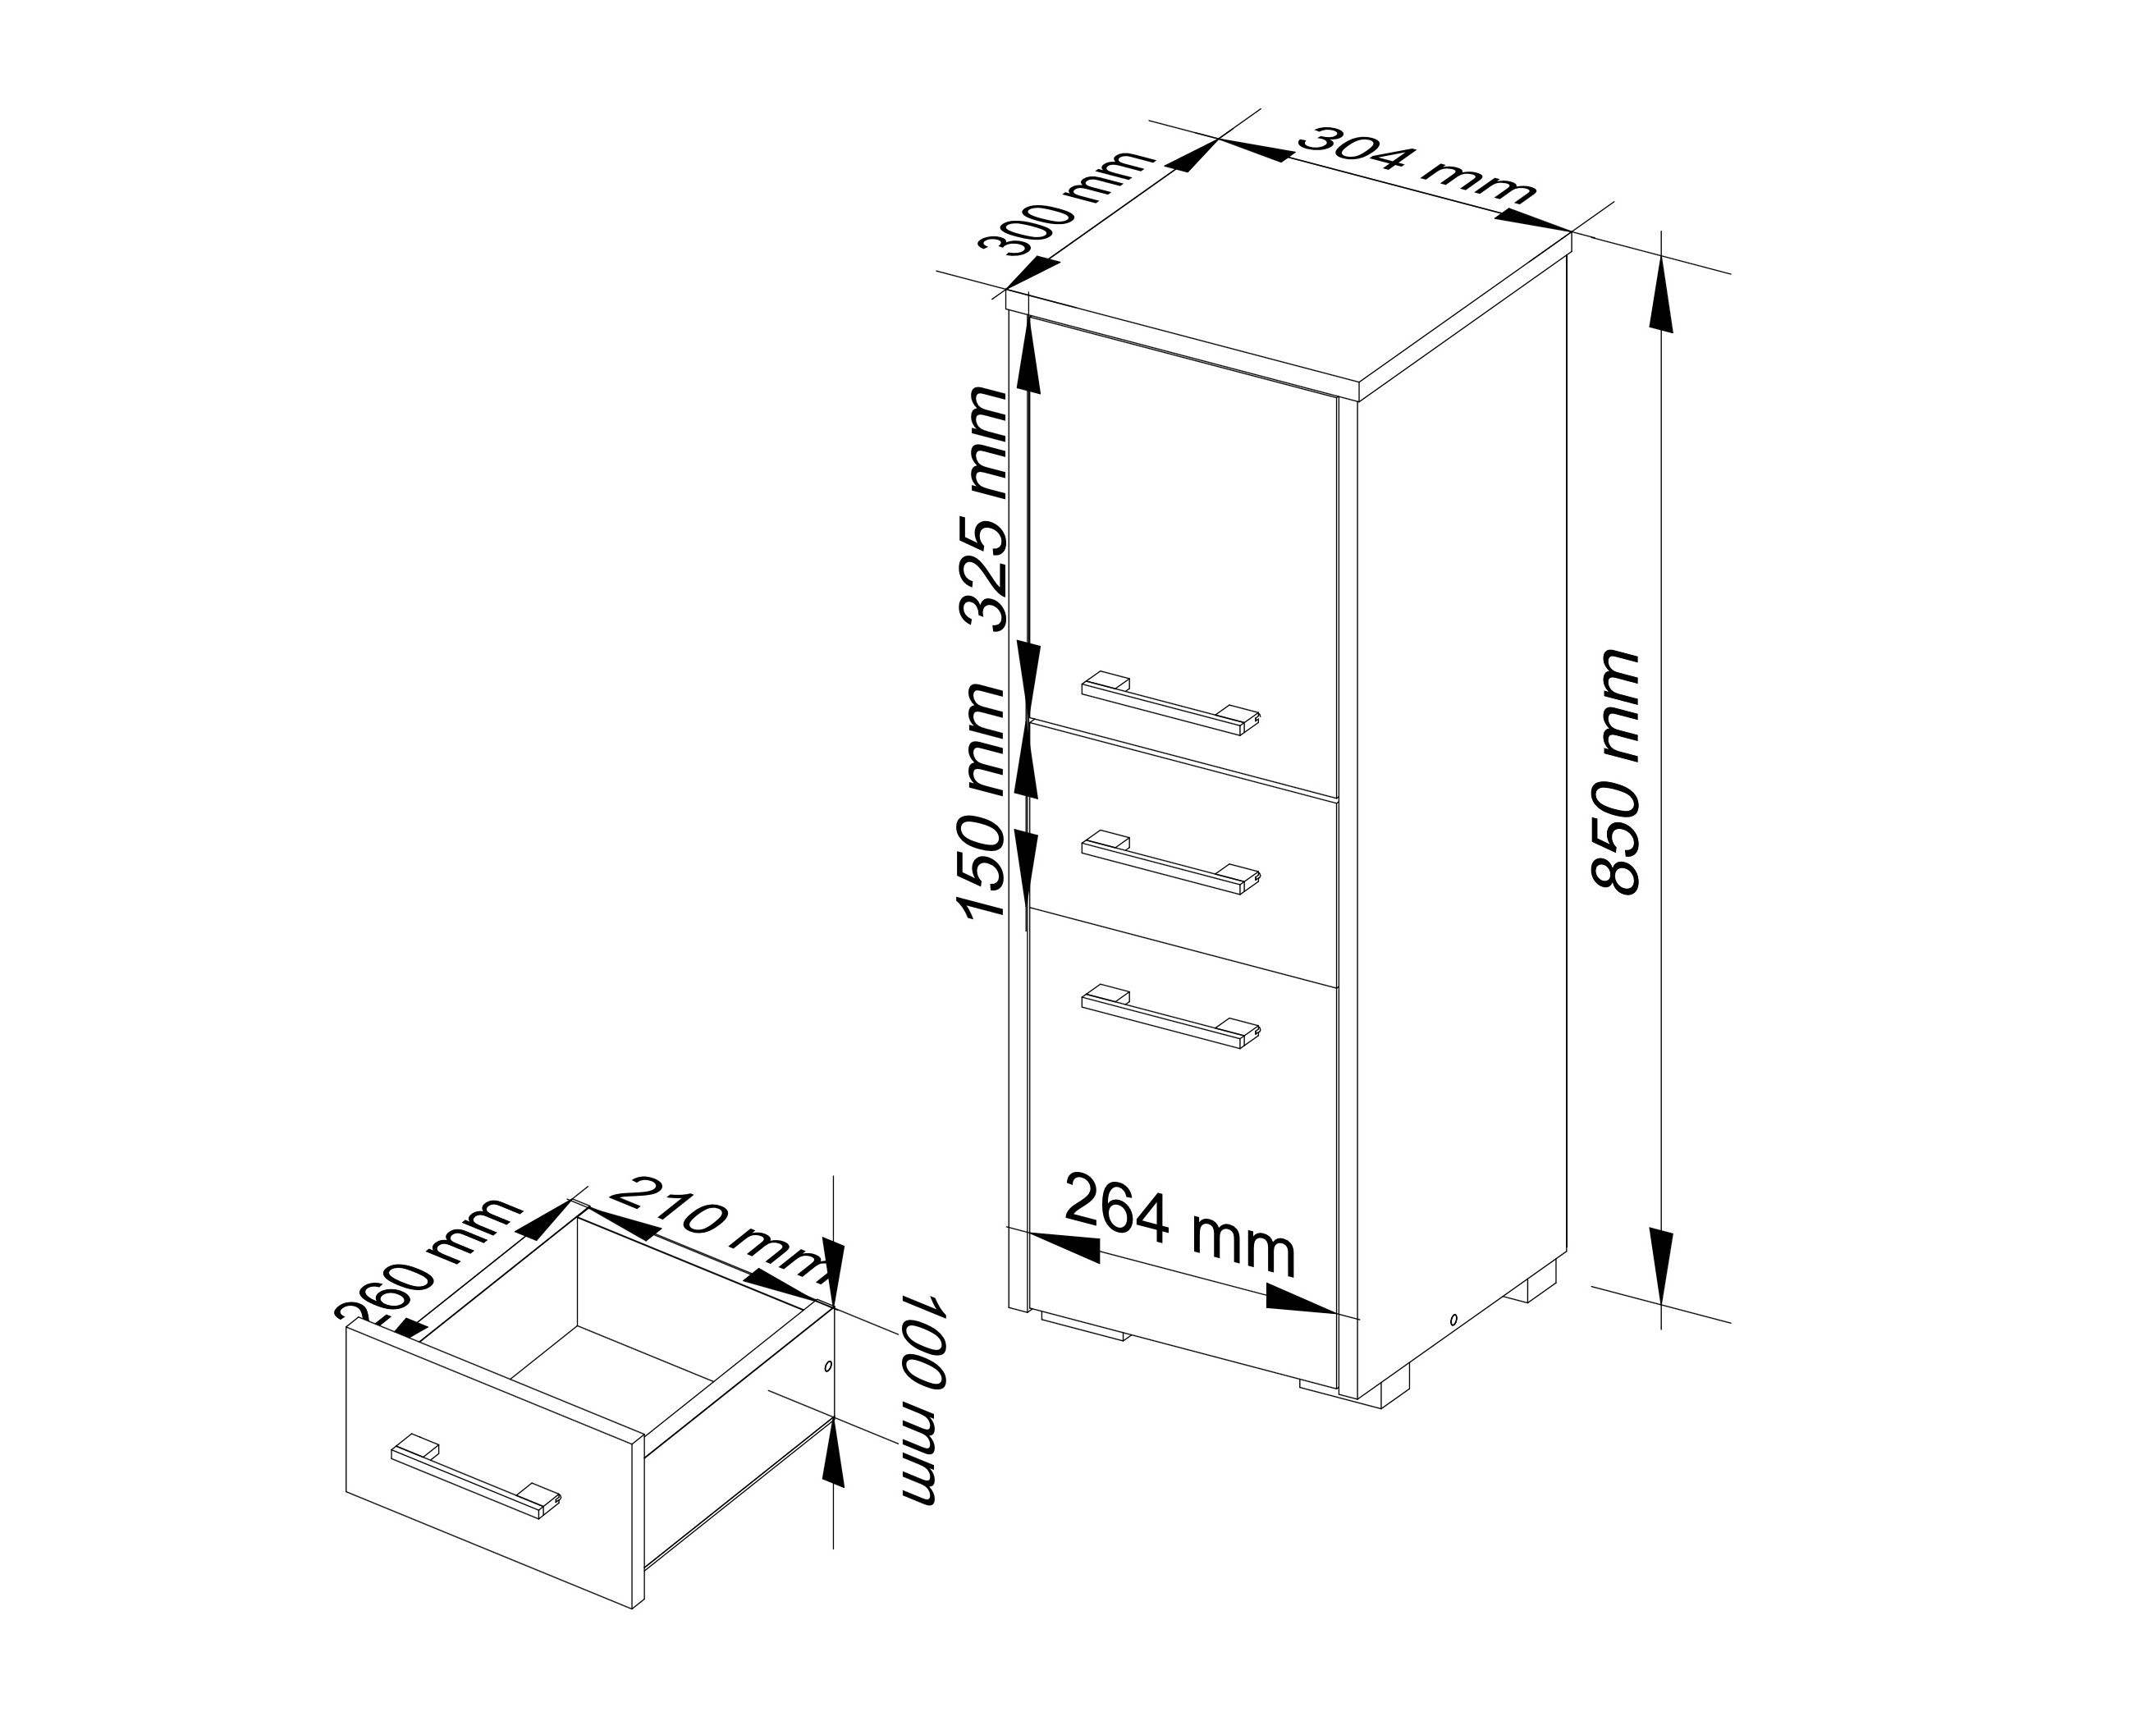 Meble AKORD - Szafka łazienkowa FIN Dąb Sonoma 30 cm 2 drzwi 1 szuflada kolor Dąb Sonoma mat 3 półki 30x30x85 cm - Wymiary toaletki AKORD - 5901738165625